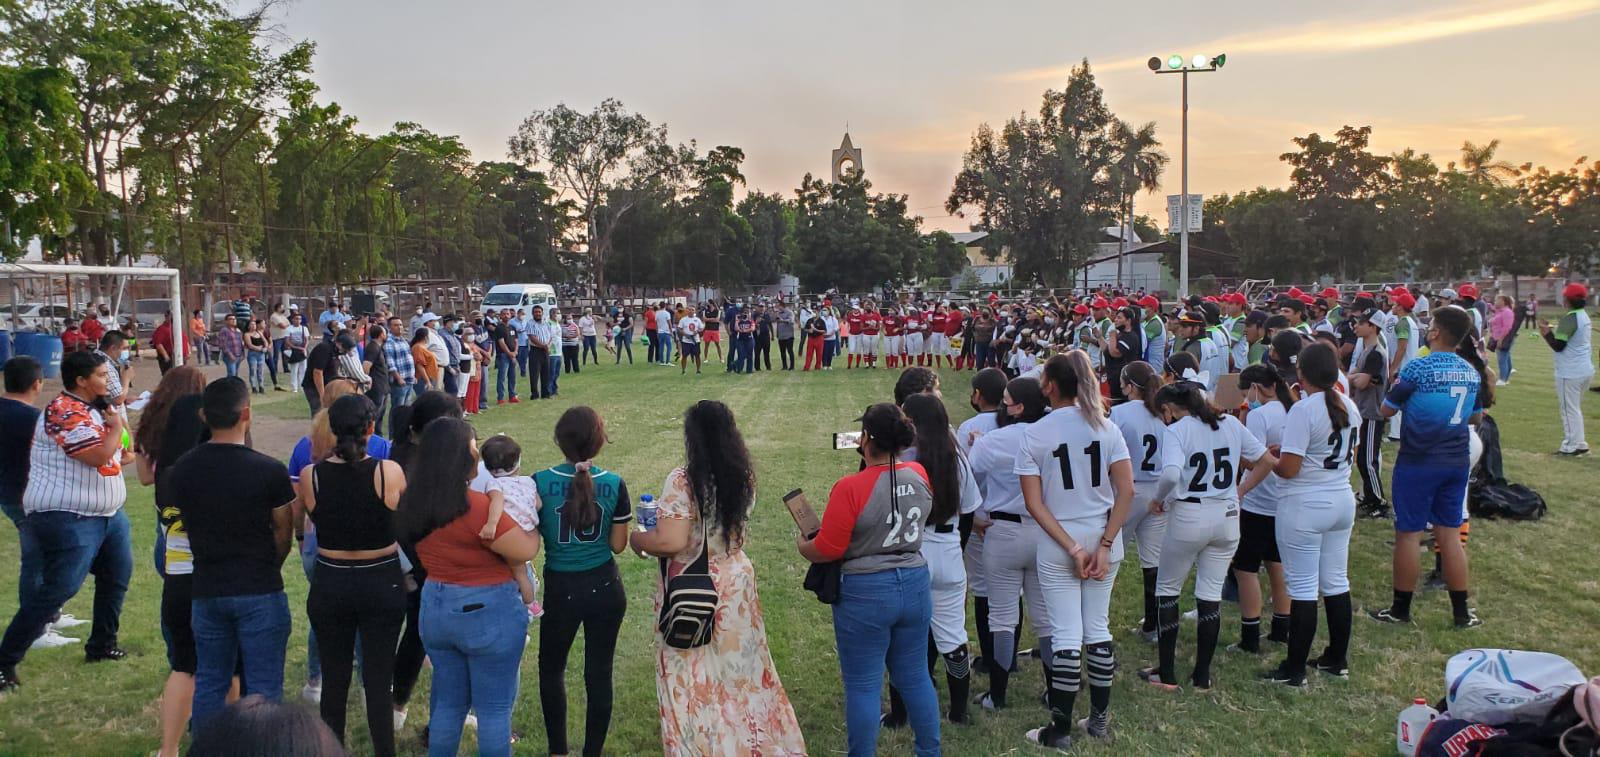 $!Ponen en marcha el Estatal de Softbol libre 25 y menores, en Villa Juárez